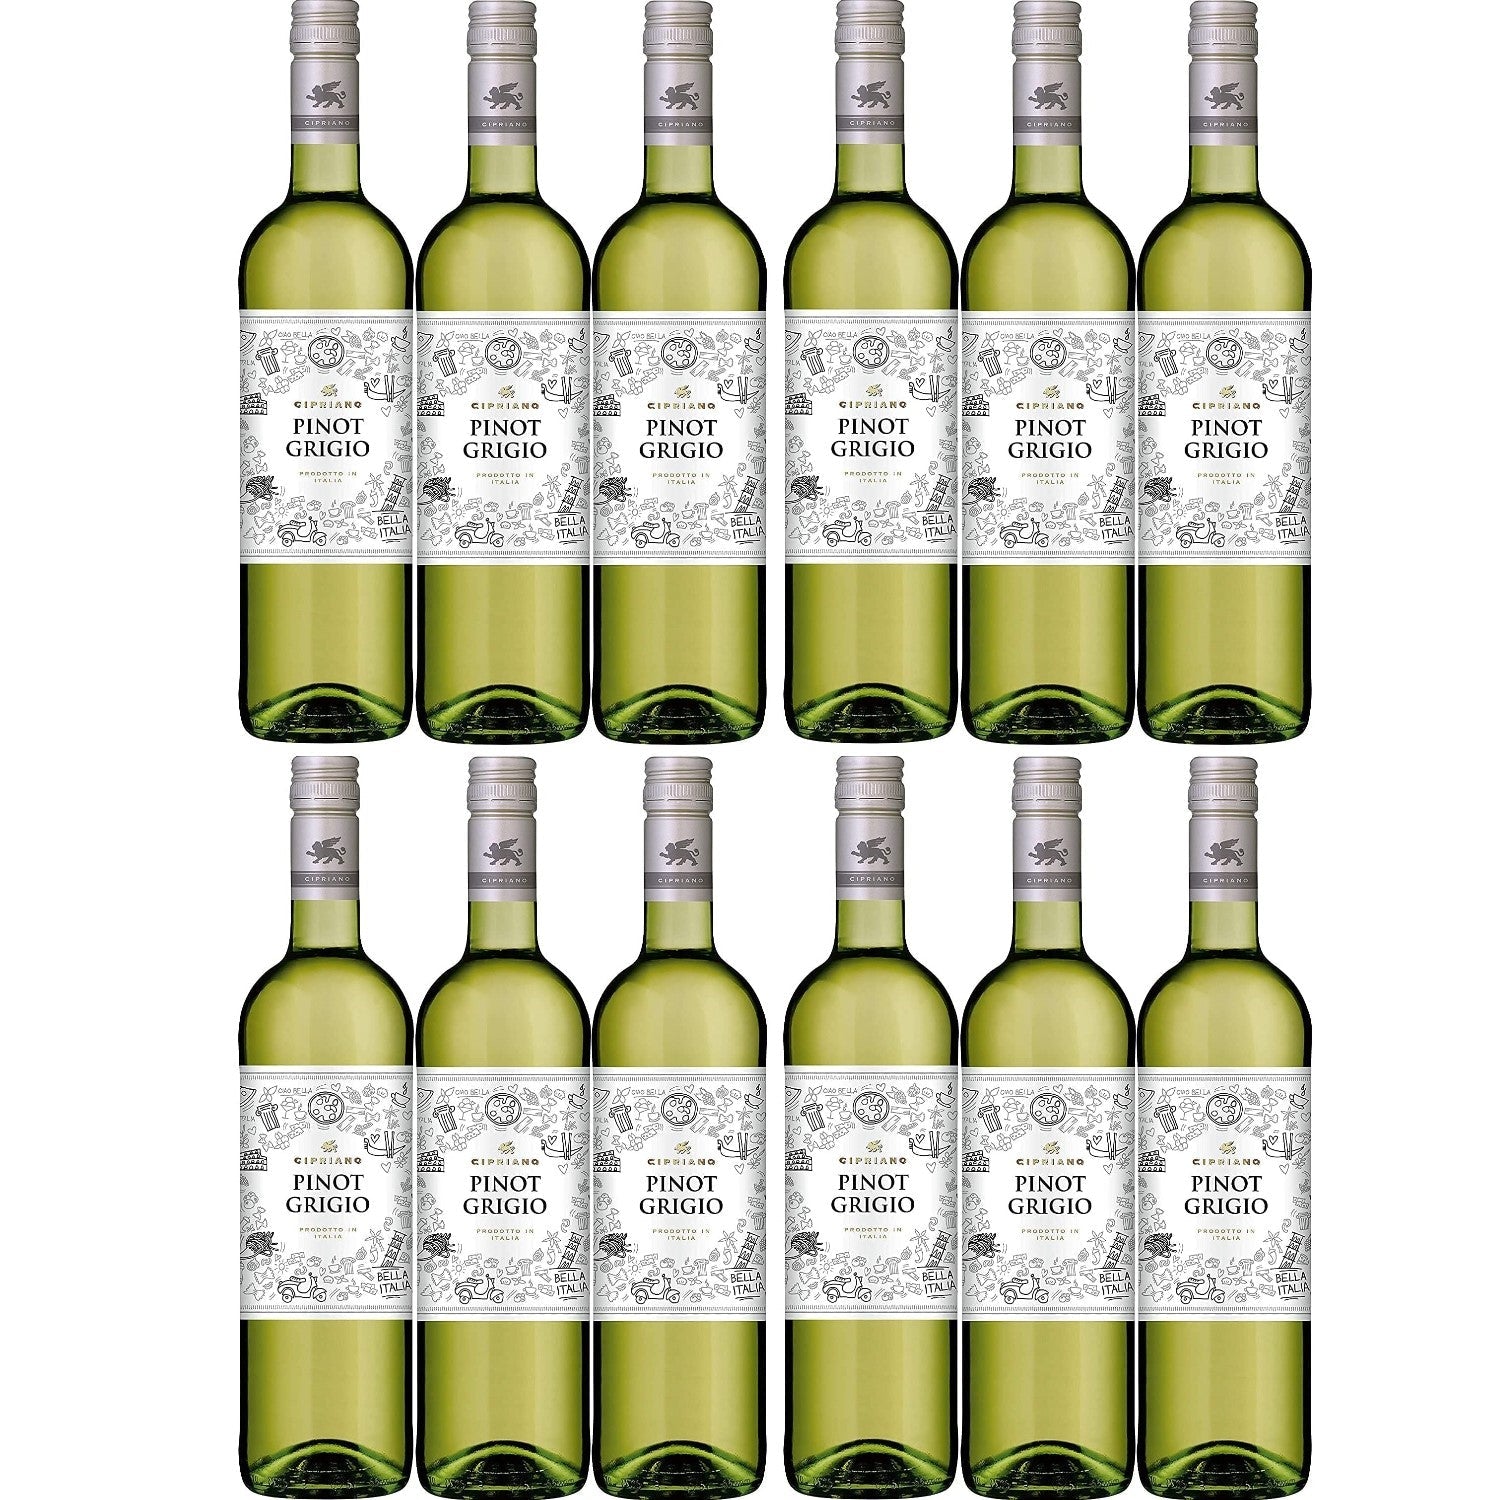 Cipriano Pinot Grigio Venezie Weißwein italienischer Wein trocken DOC Italien (12 x 0.75l) - Versanel -